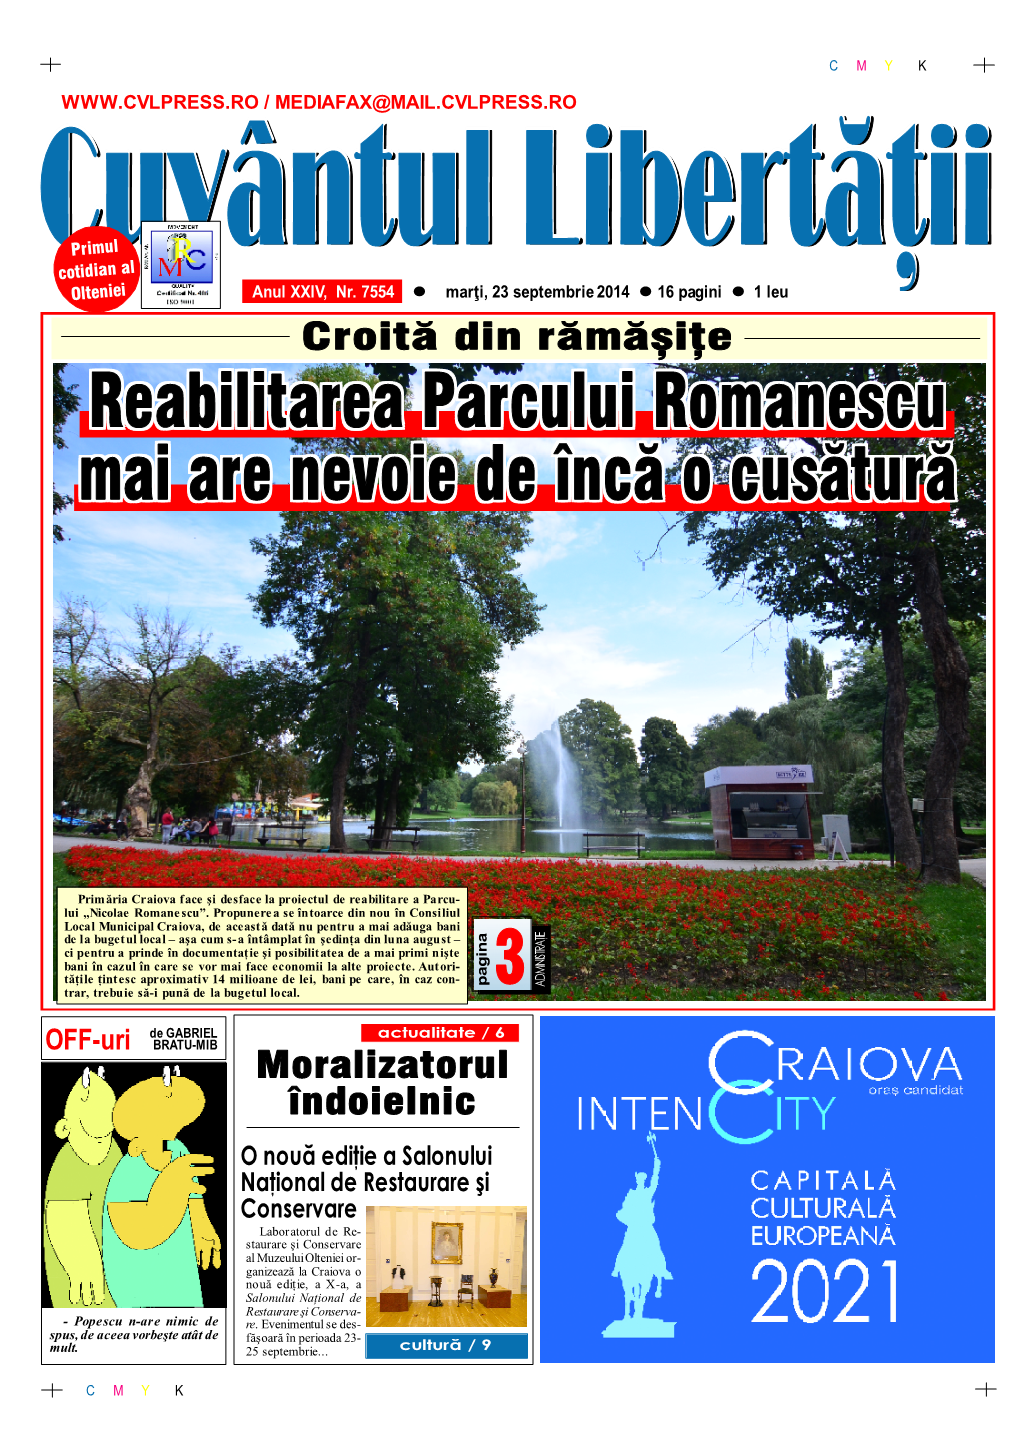 Reabilitarea Parcului Romanescu Mai Are Nevoie De Încă O Cusătură